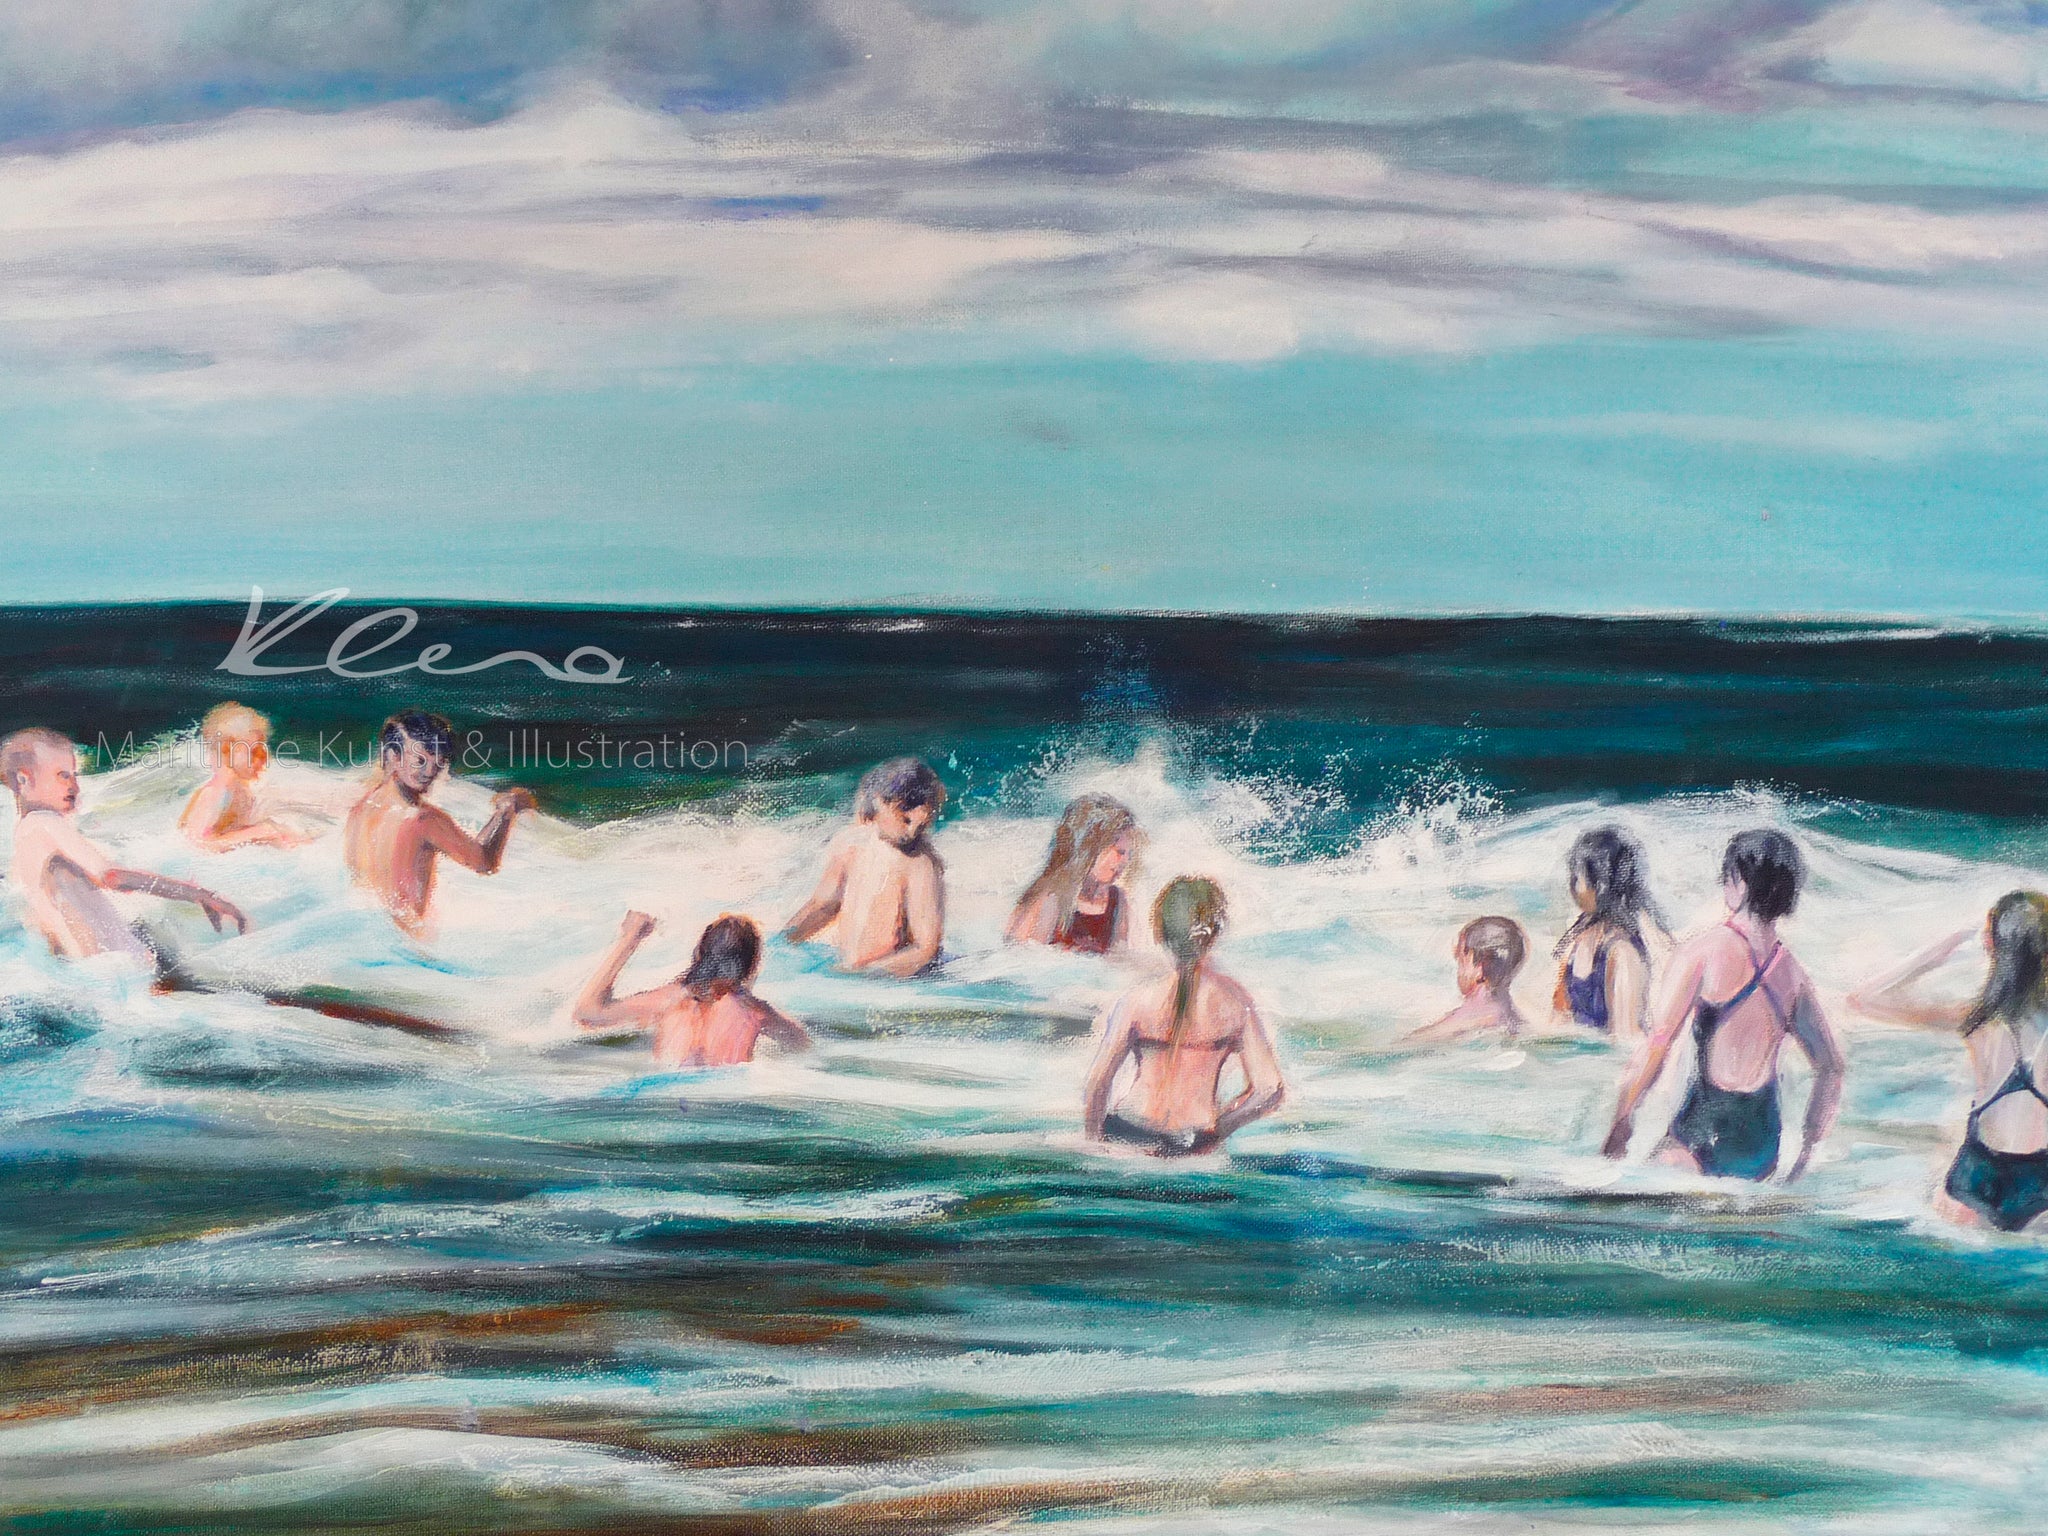 Das Baden in Nordsee und Ostsee ist ein riesengroßer Spaß. Eine Gruppe Kinder tobt im Wasser und genießt den Wellengang. "Badespaß" ist ein Motiv der Künstlerin Susanne Klena. Nordsee und Ostsee Kunst.